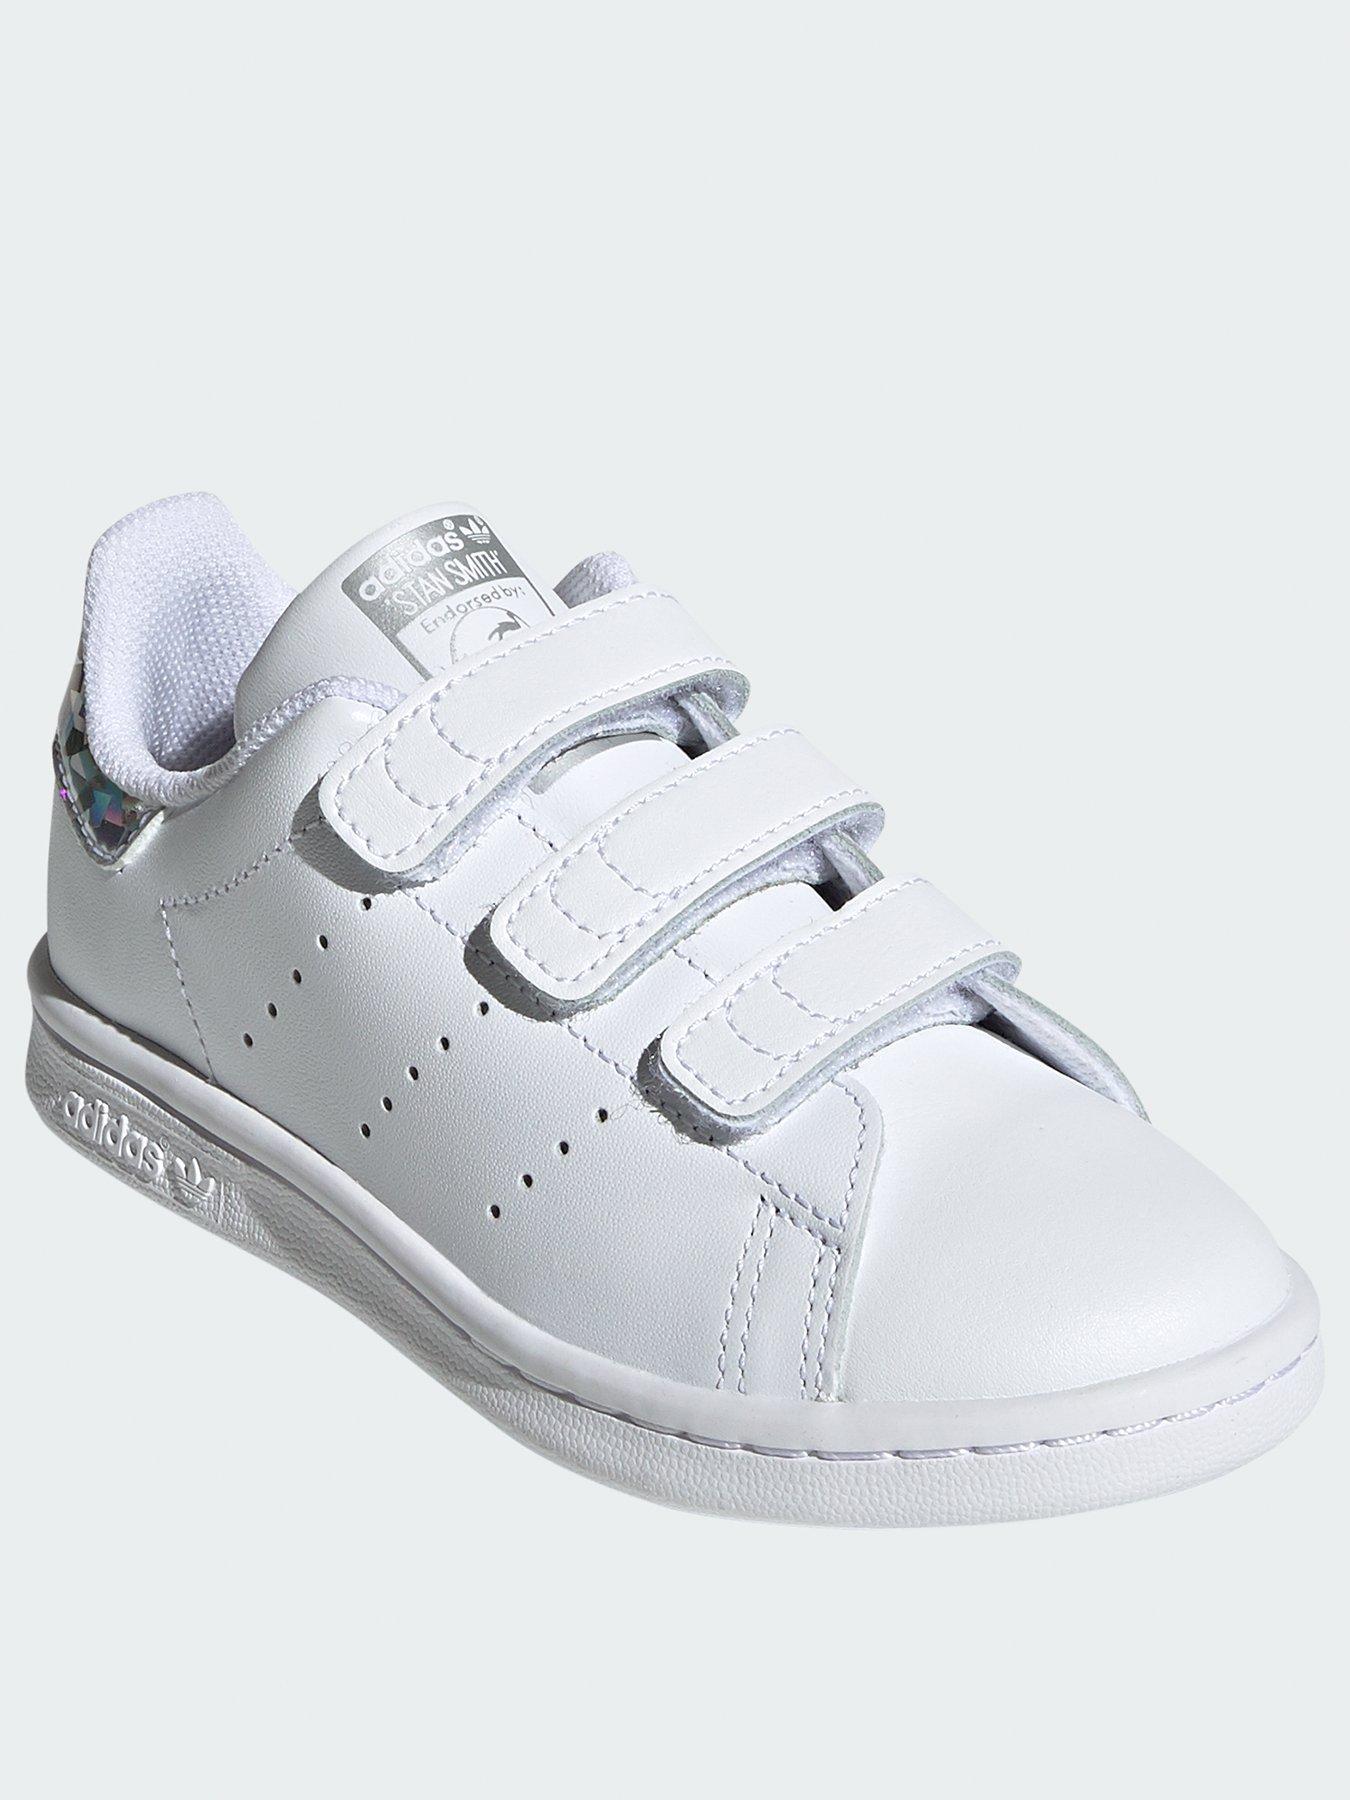 adidas white girls trainers